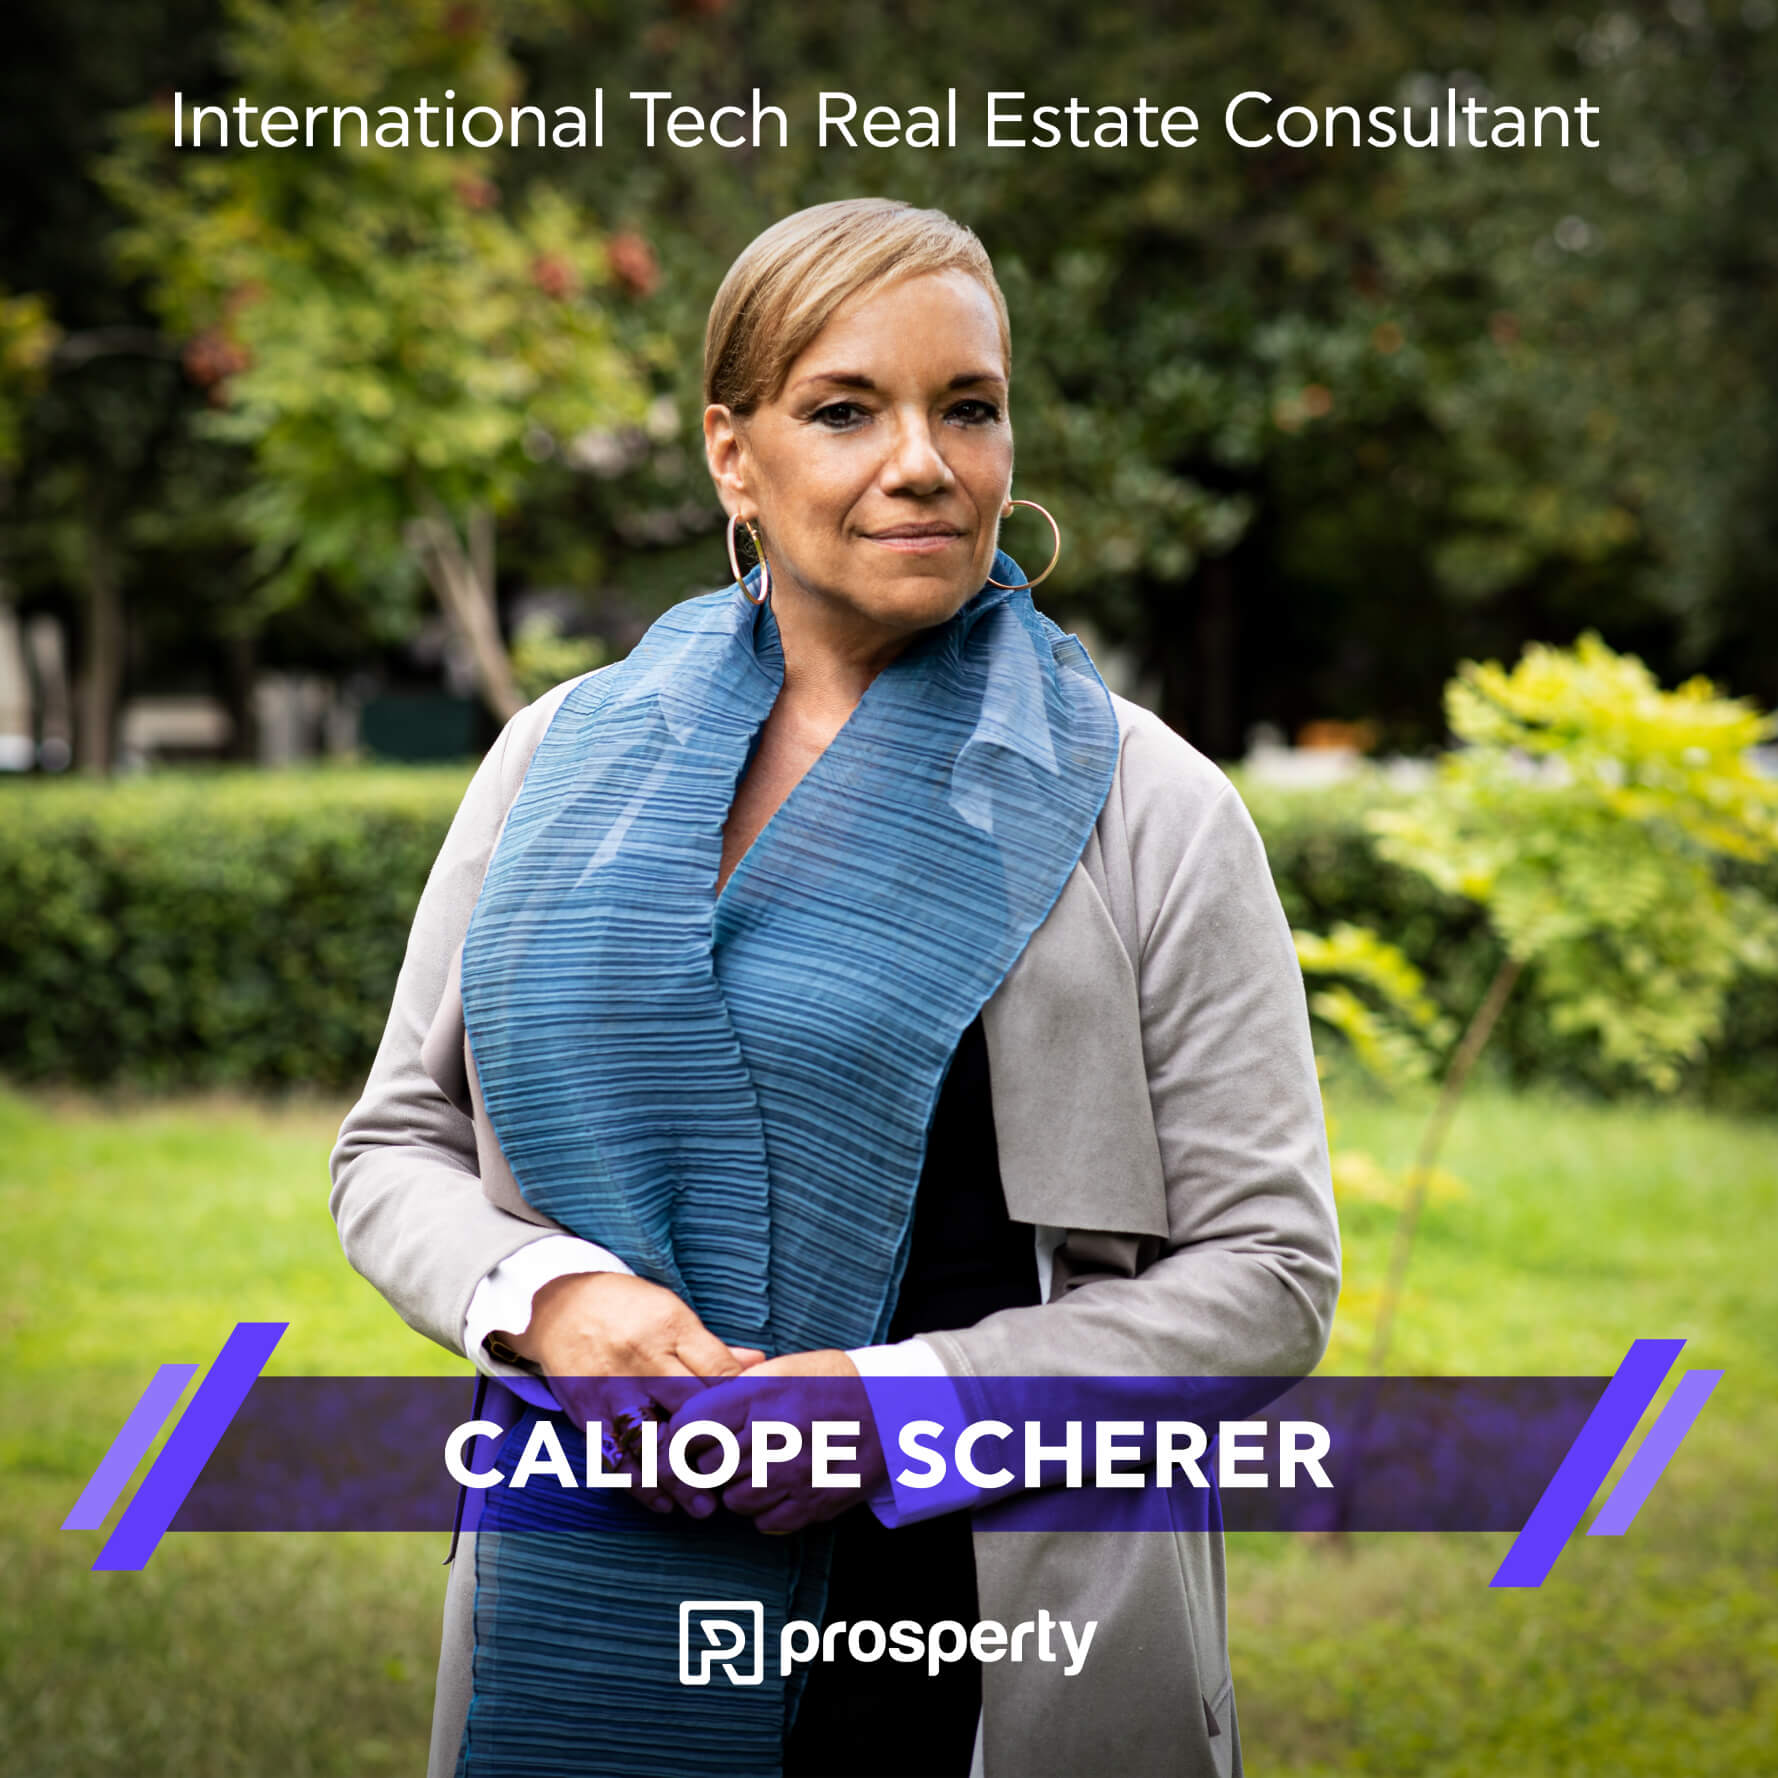 Caliope Scherer | Διεθνής Τεχνικός Σύμβουλος Ακίνητης Περιουσίας